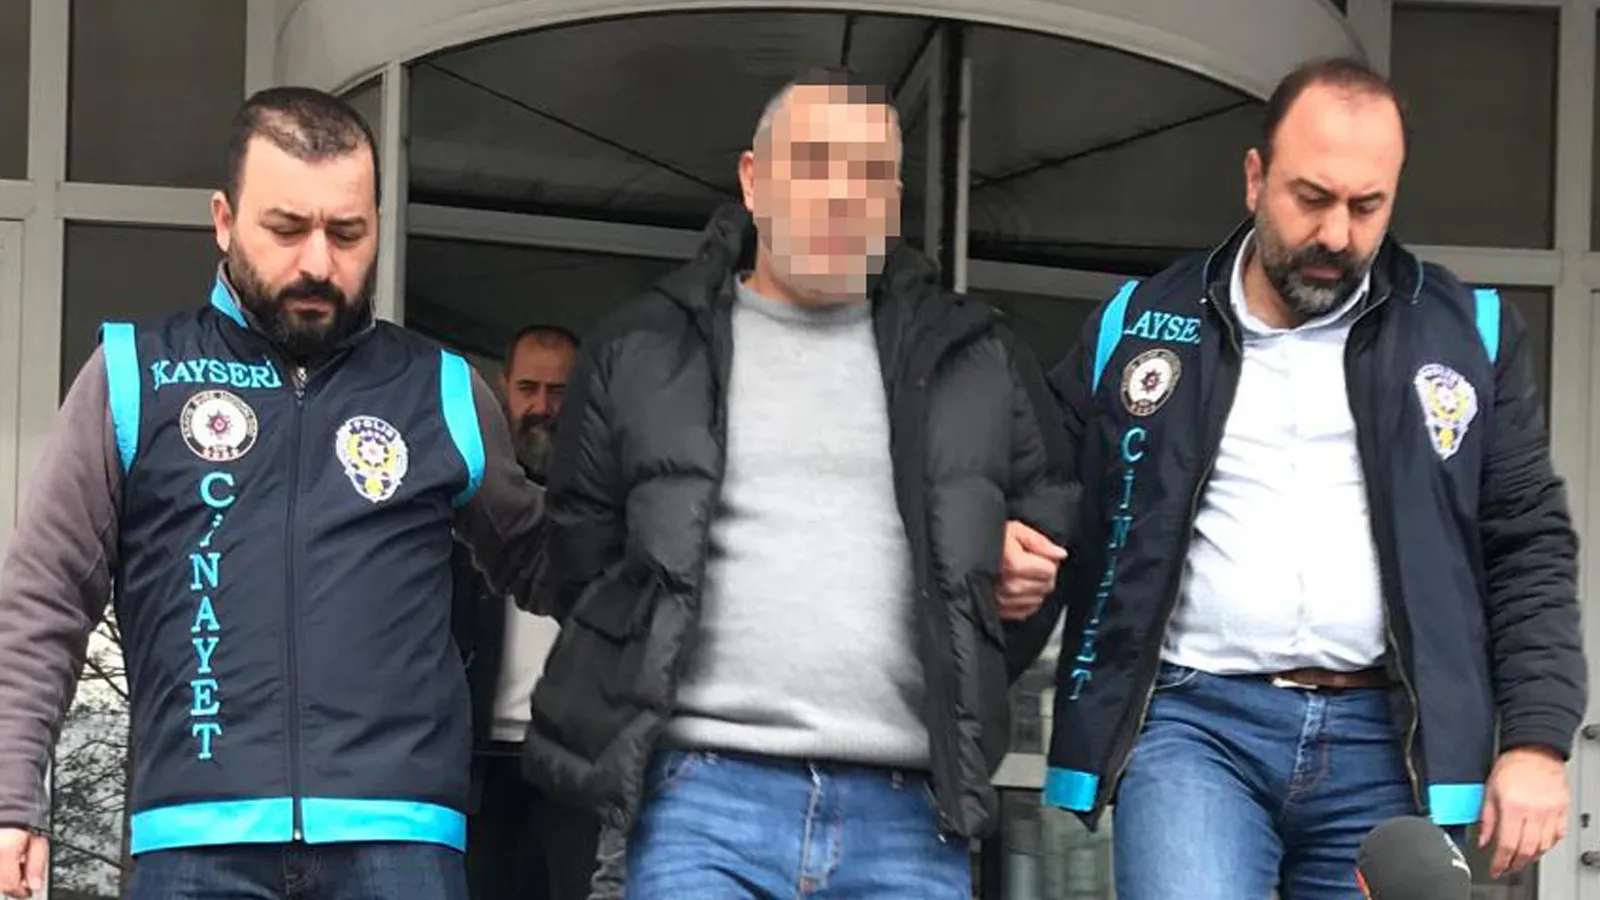 Kayseri'de Gazeteciyi Silahla Yaralayan Şahıs Tutuklandı! 